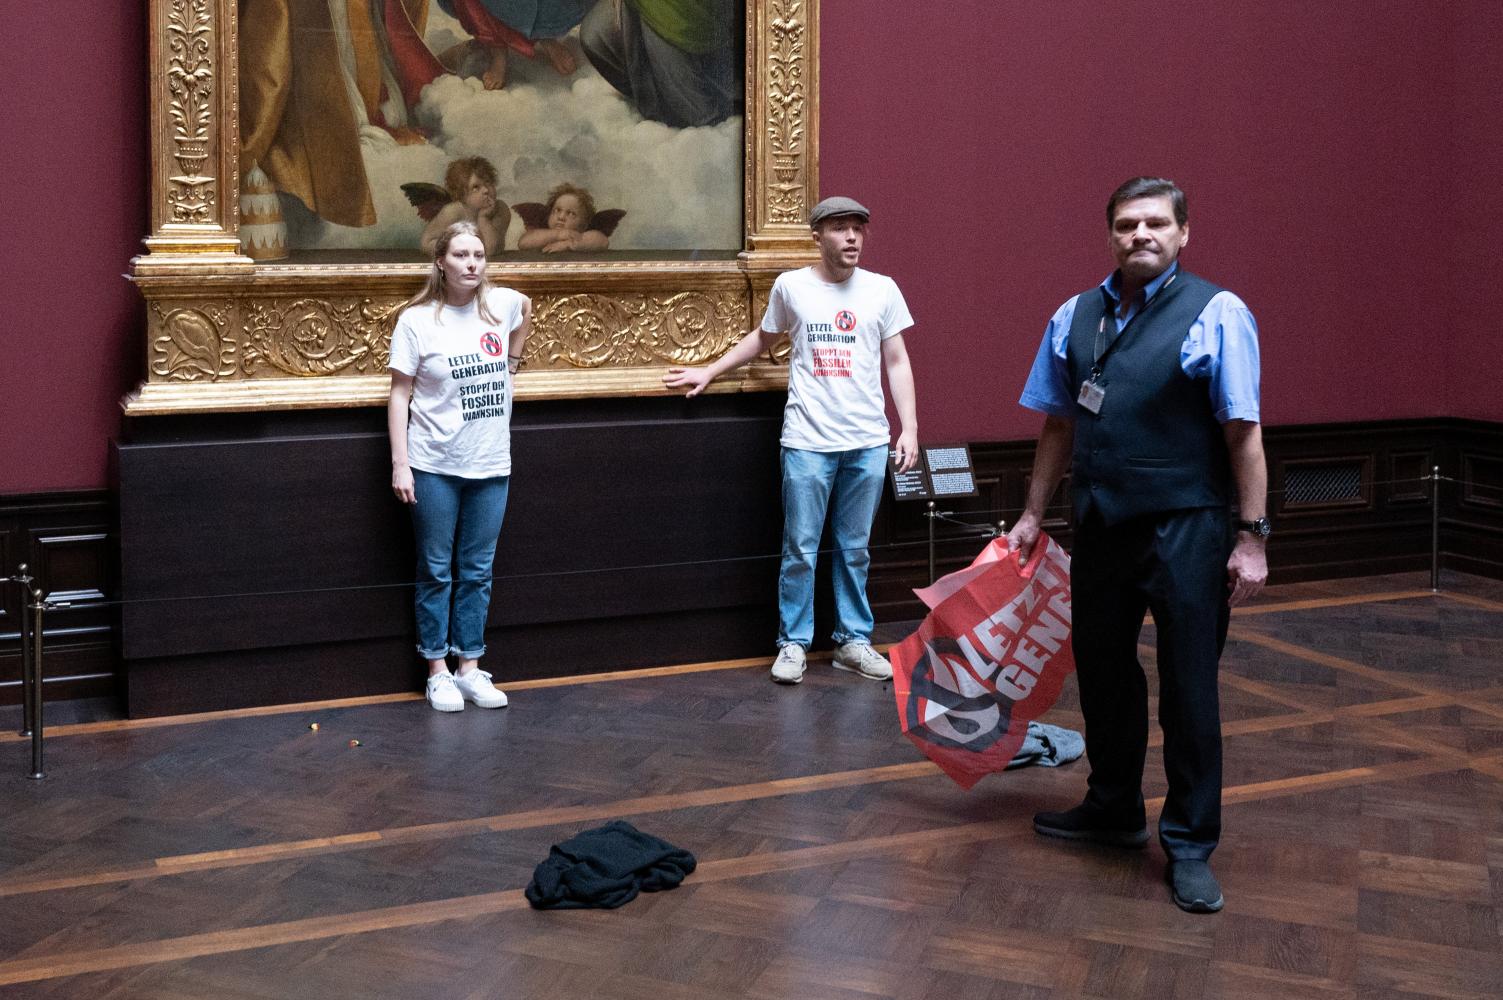   Umweltaktivisten der Gruppe "Letzte Generation" stehen in der Gemäldegalerie Alte Meister in Dresden an dem Gemälde "Sixtinische Madonna" von Raffael